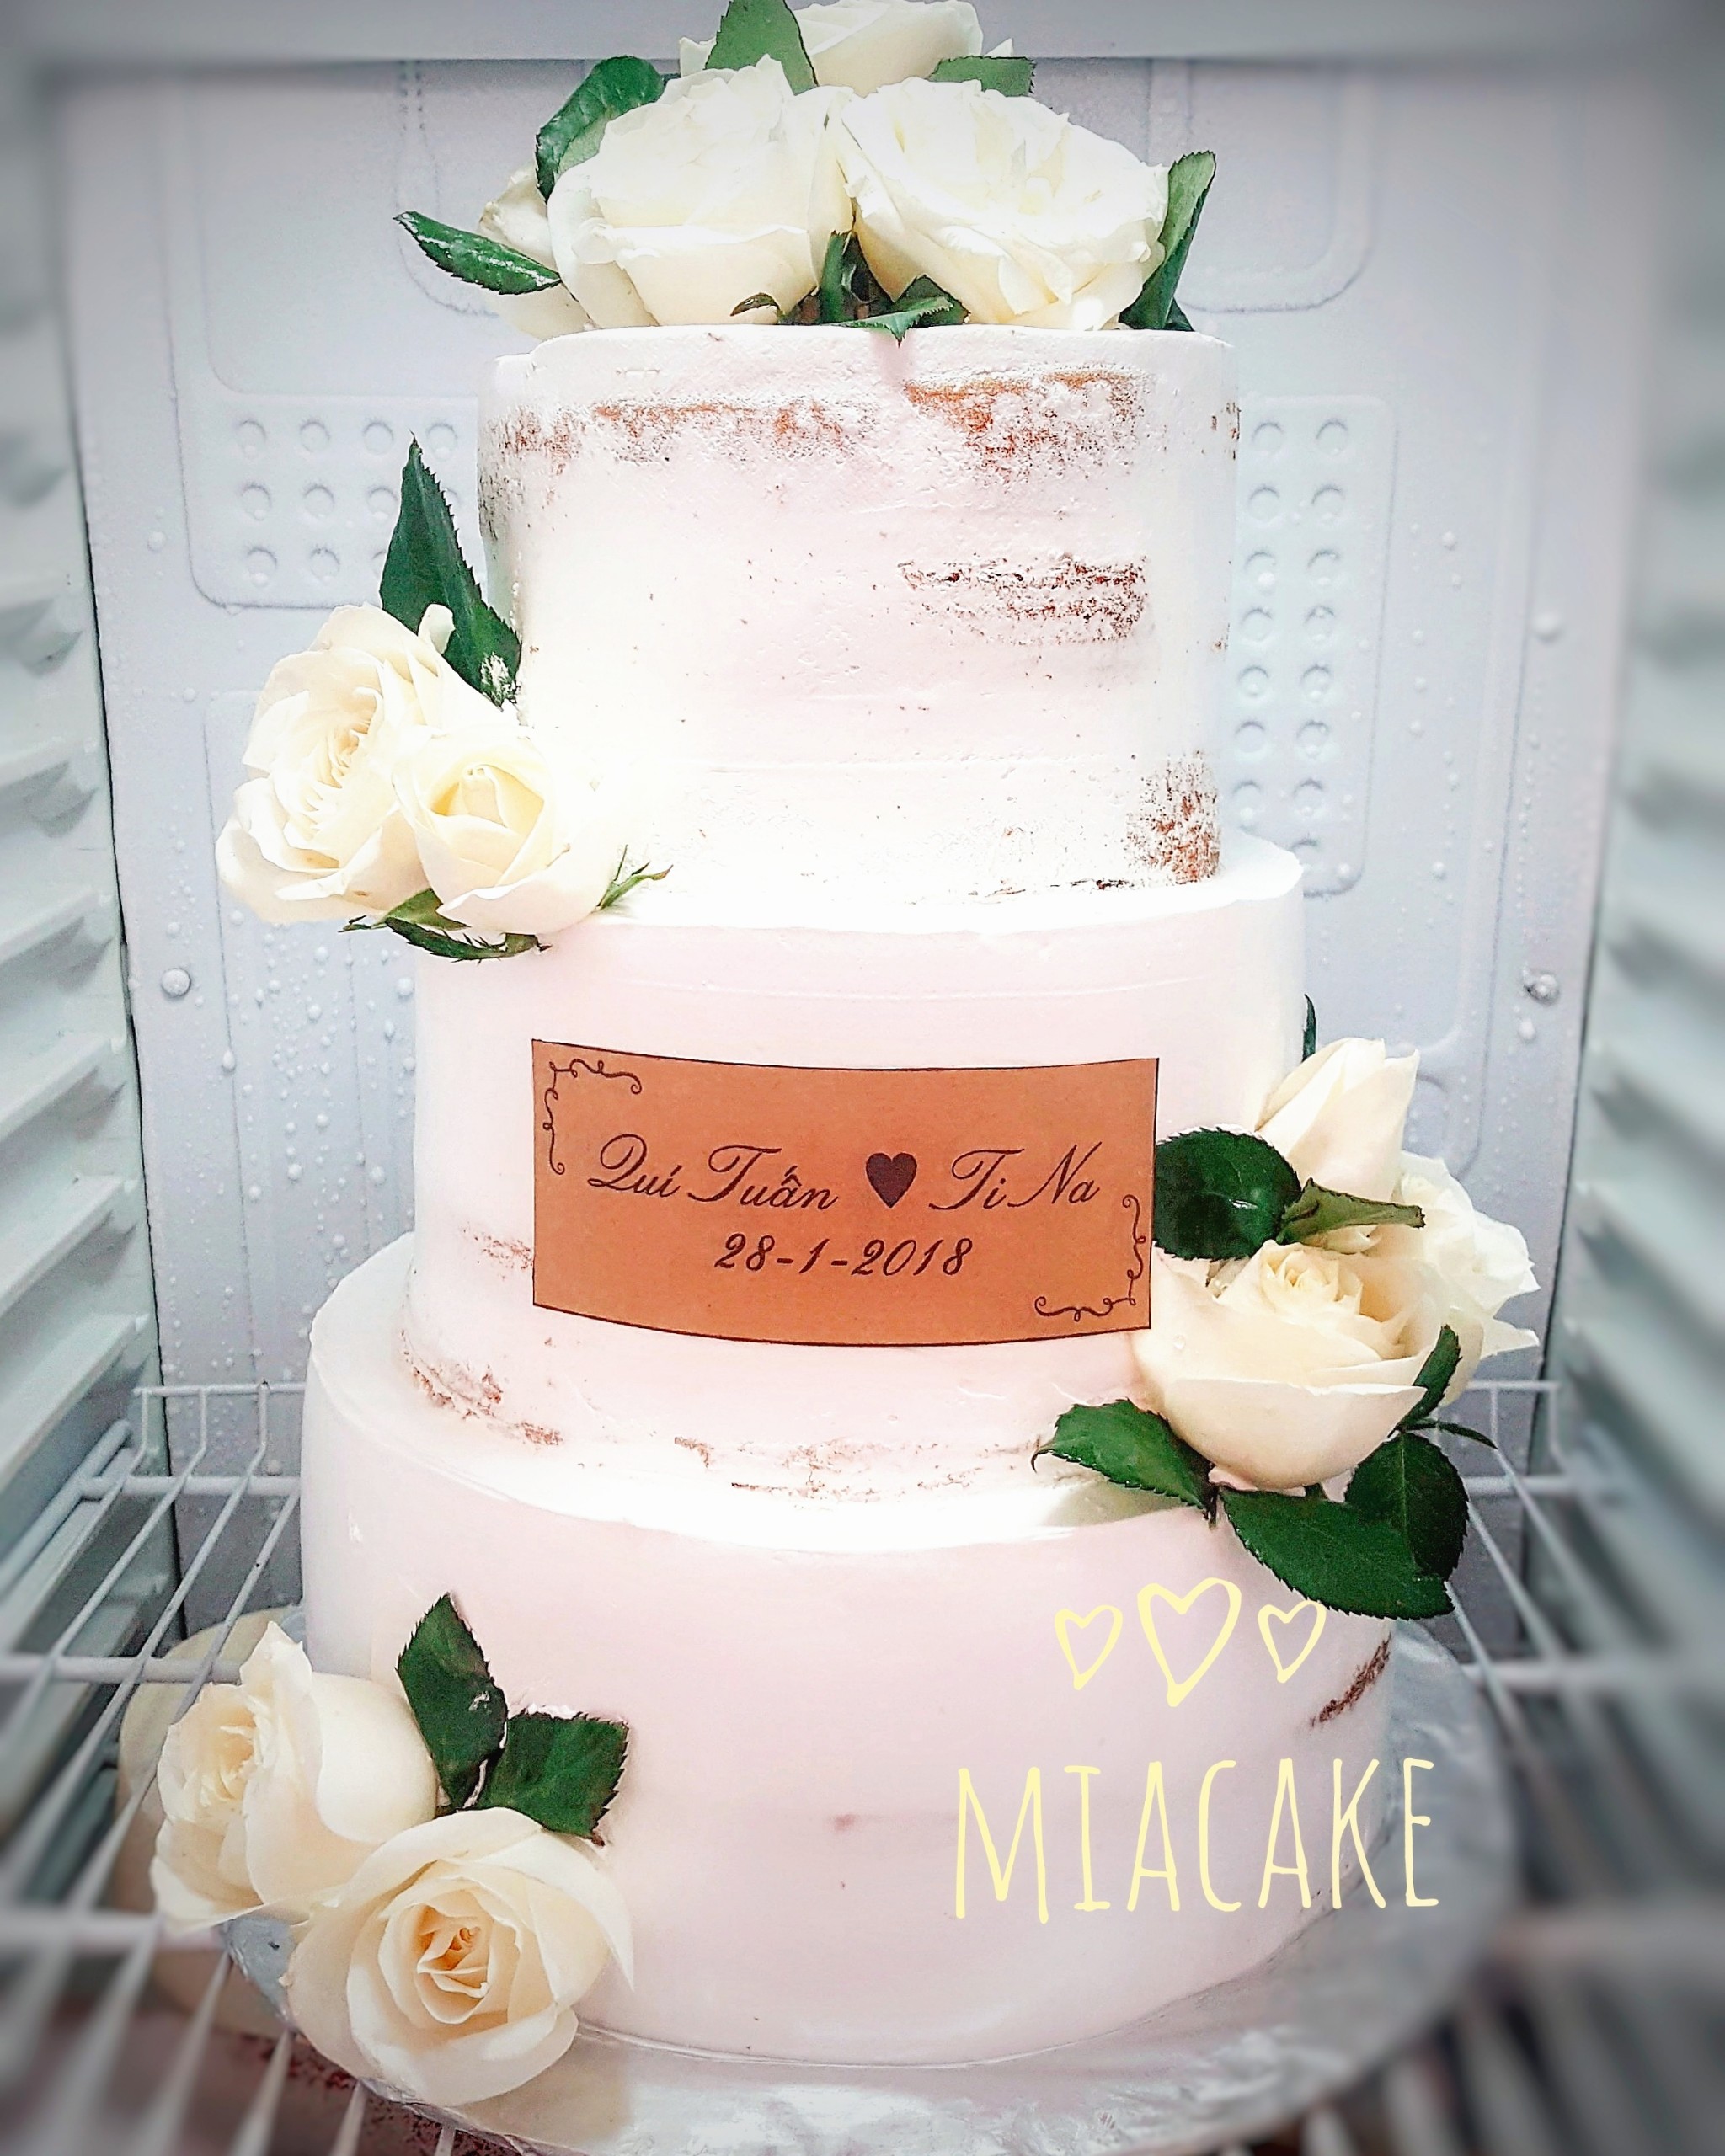 mẫu bánh kem đám cưới bánh cưới đẹp 2018 bánh cưới 1 tầng mẫu bánh cưới 3  tầng rời mẫu bánh kem đám hỏi các mẫu bánh cưới tuyệt đẹp banh kem